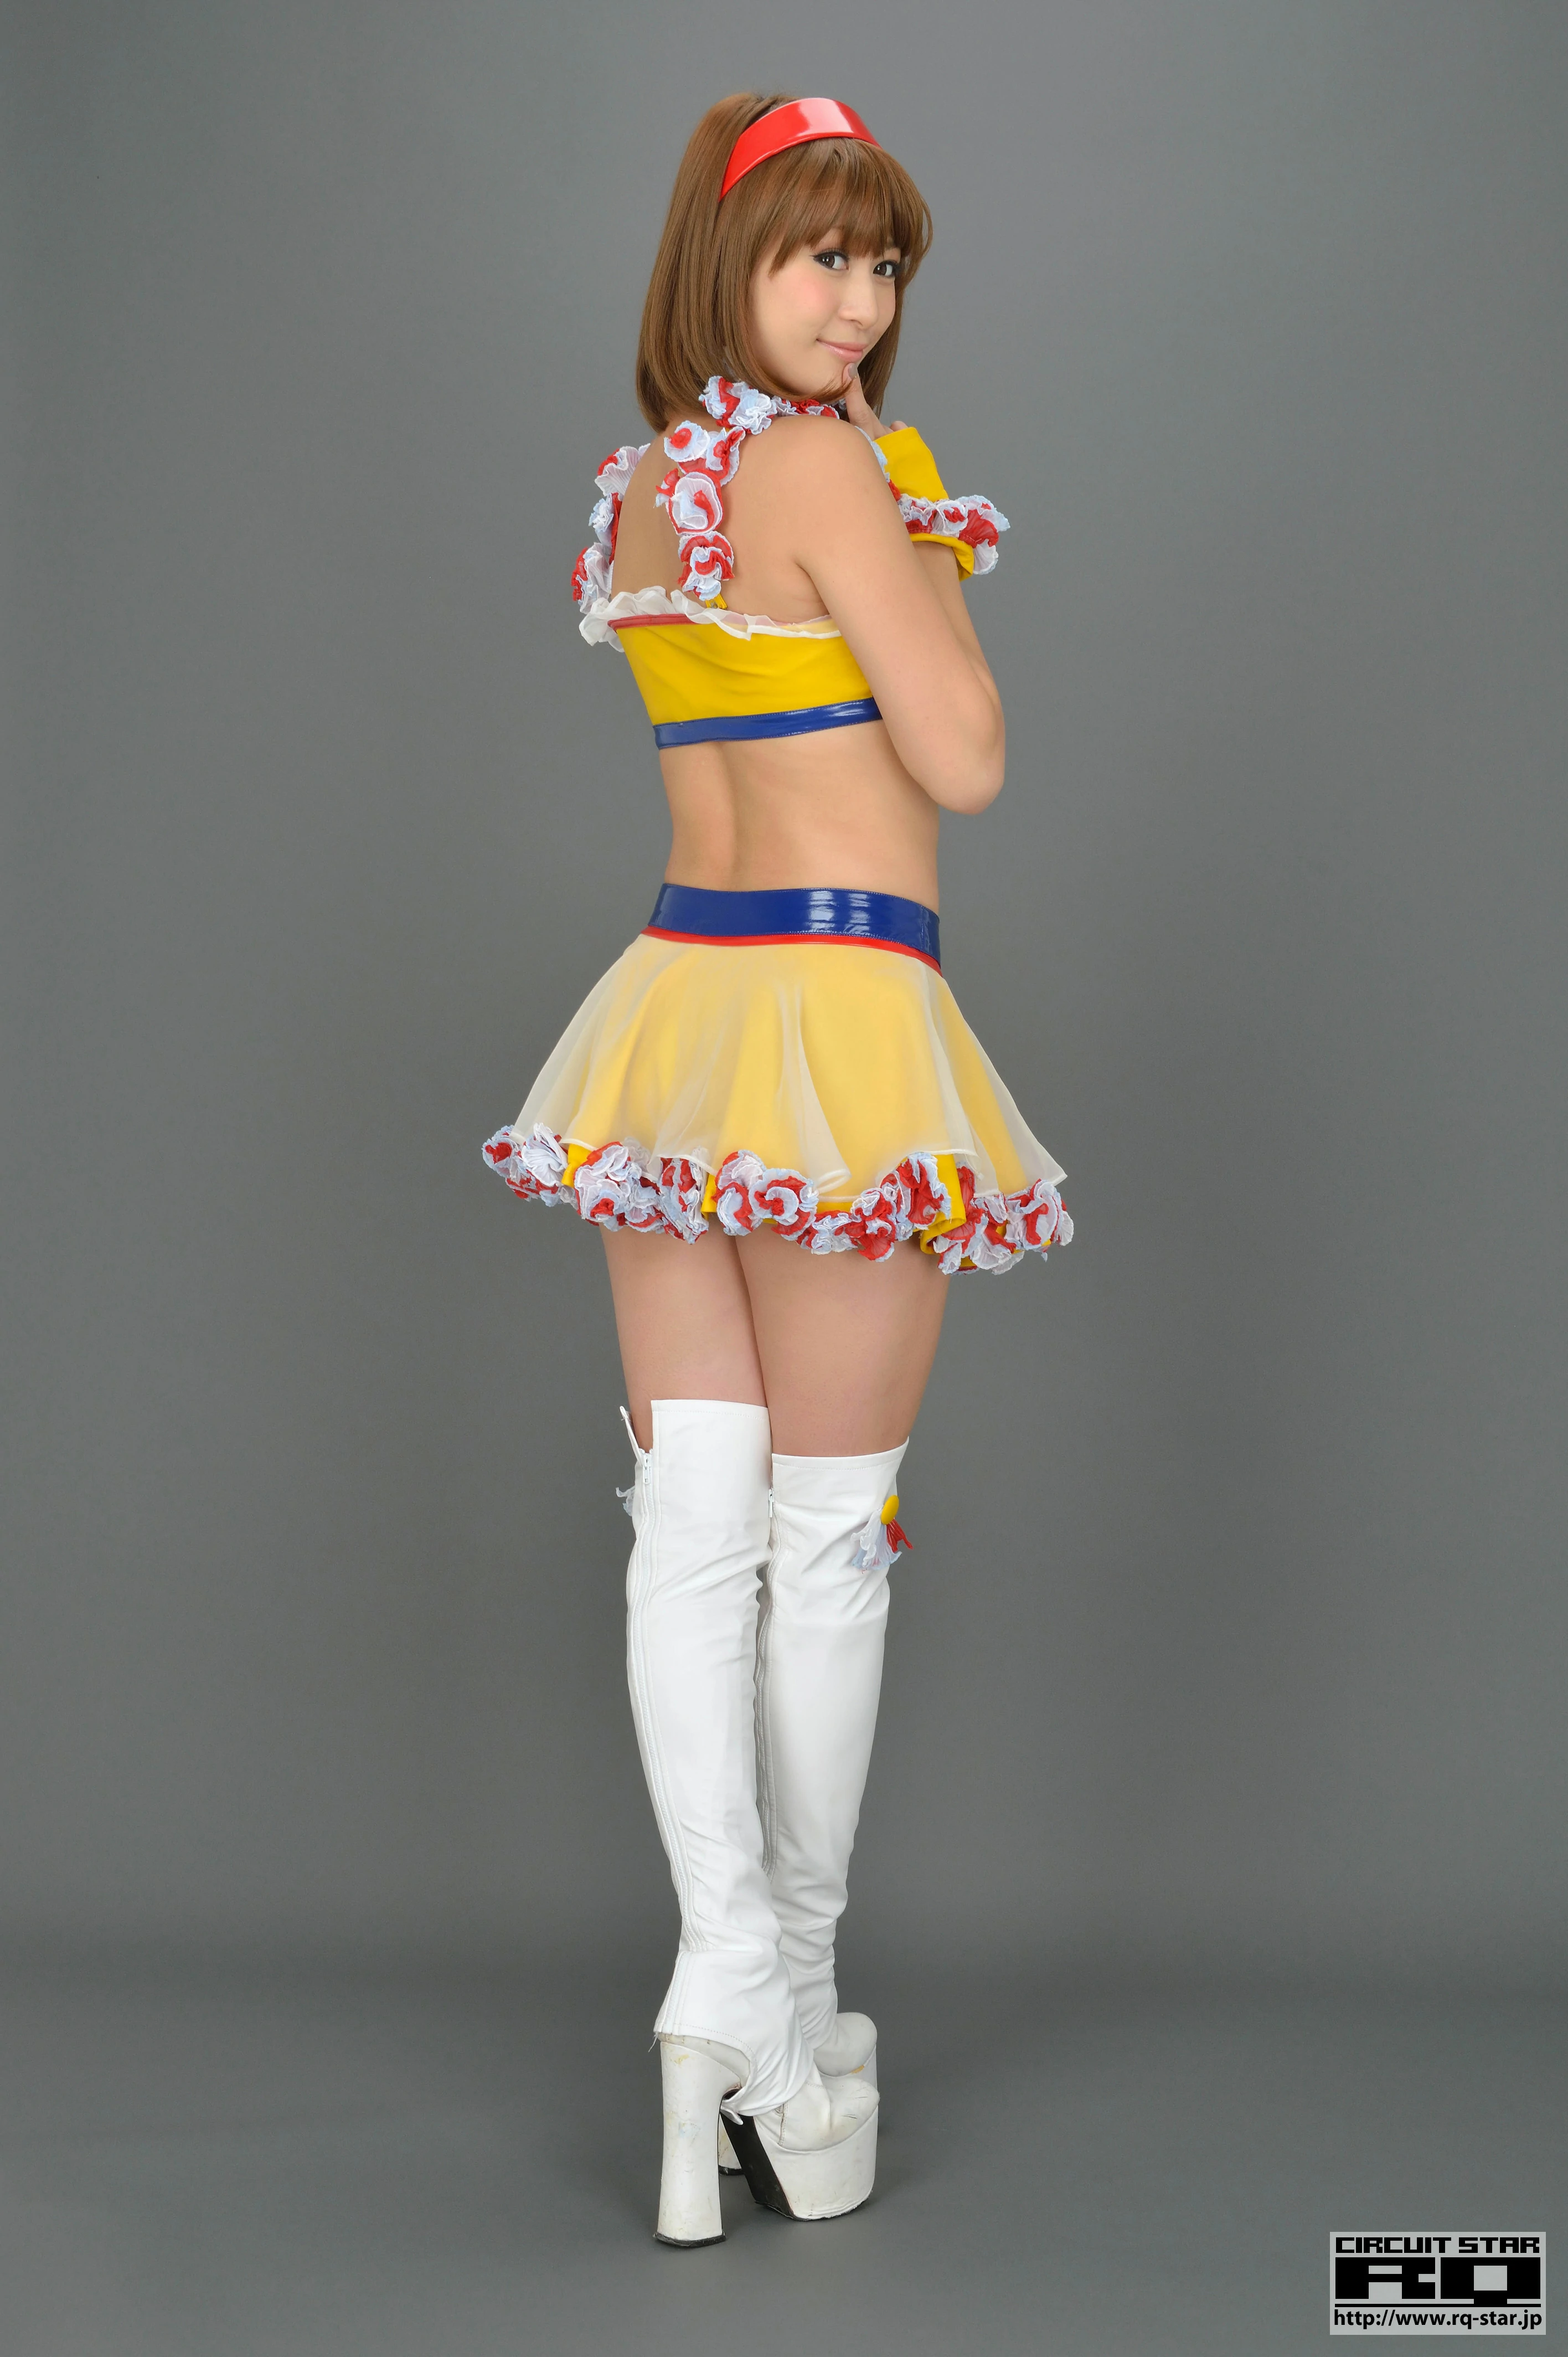 [RQ-STAR写真]NO.00733 日本赛车女郎 しばはらまい（柴原麻衣，Mai Shibahara）黄色制服加短裙性感写真集,013